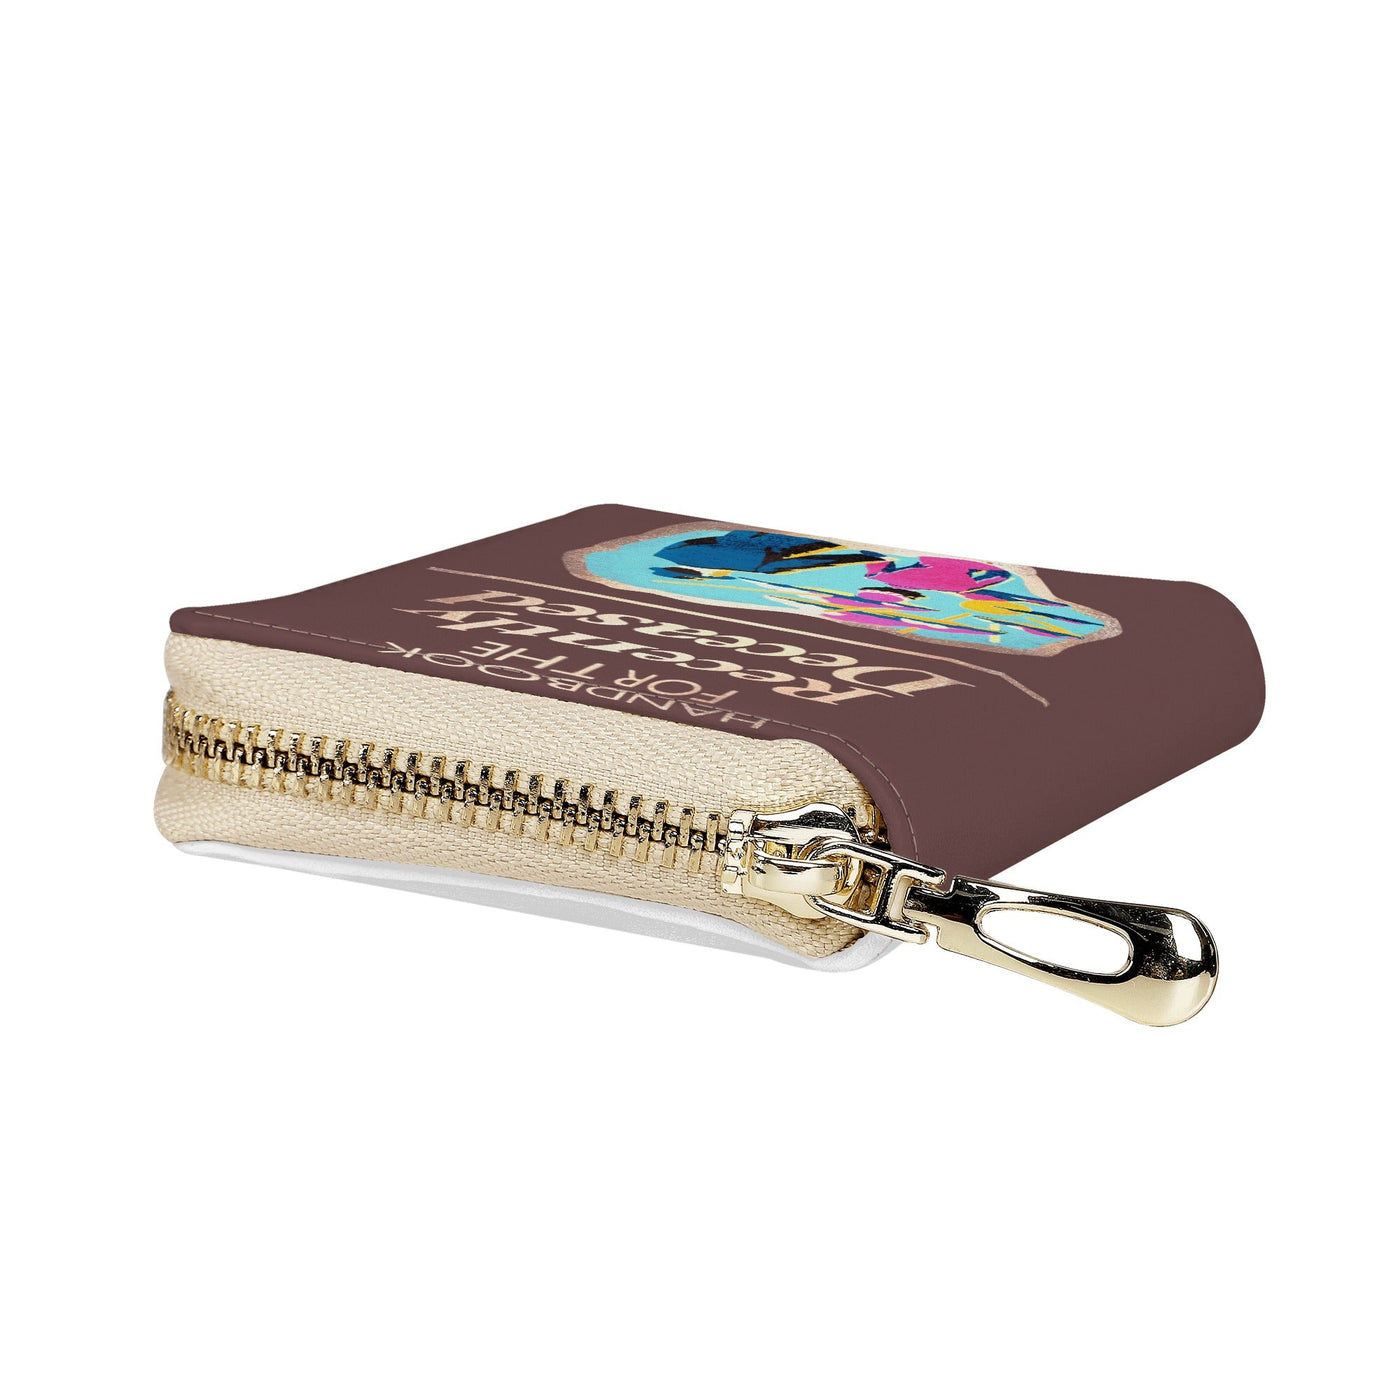 Handbook for the recently deceased | Beetlejuice Small Zipper Wallet